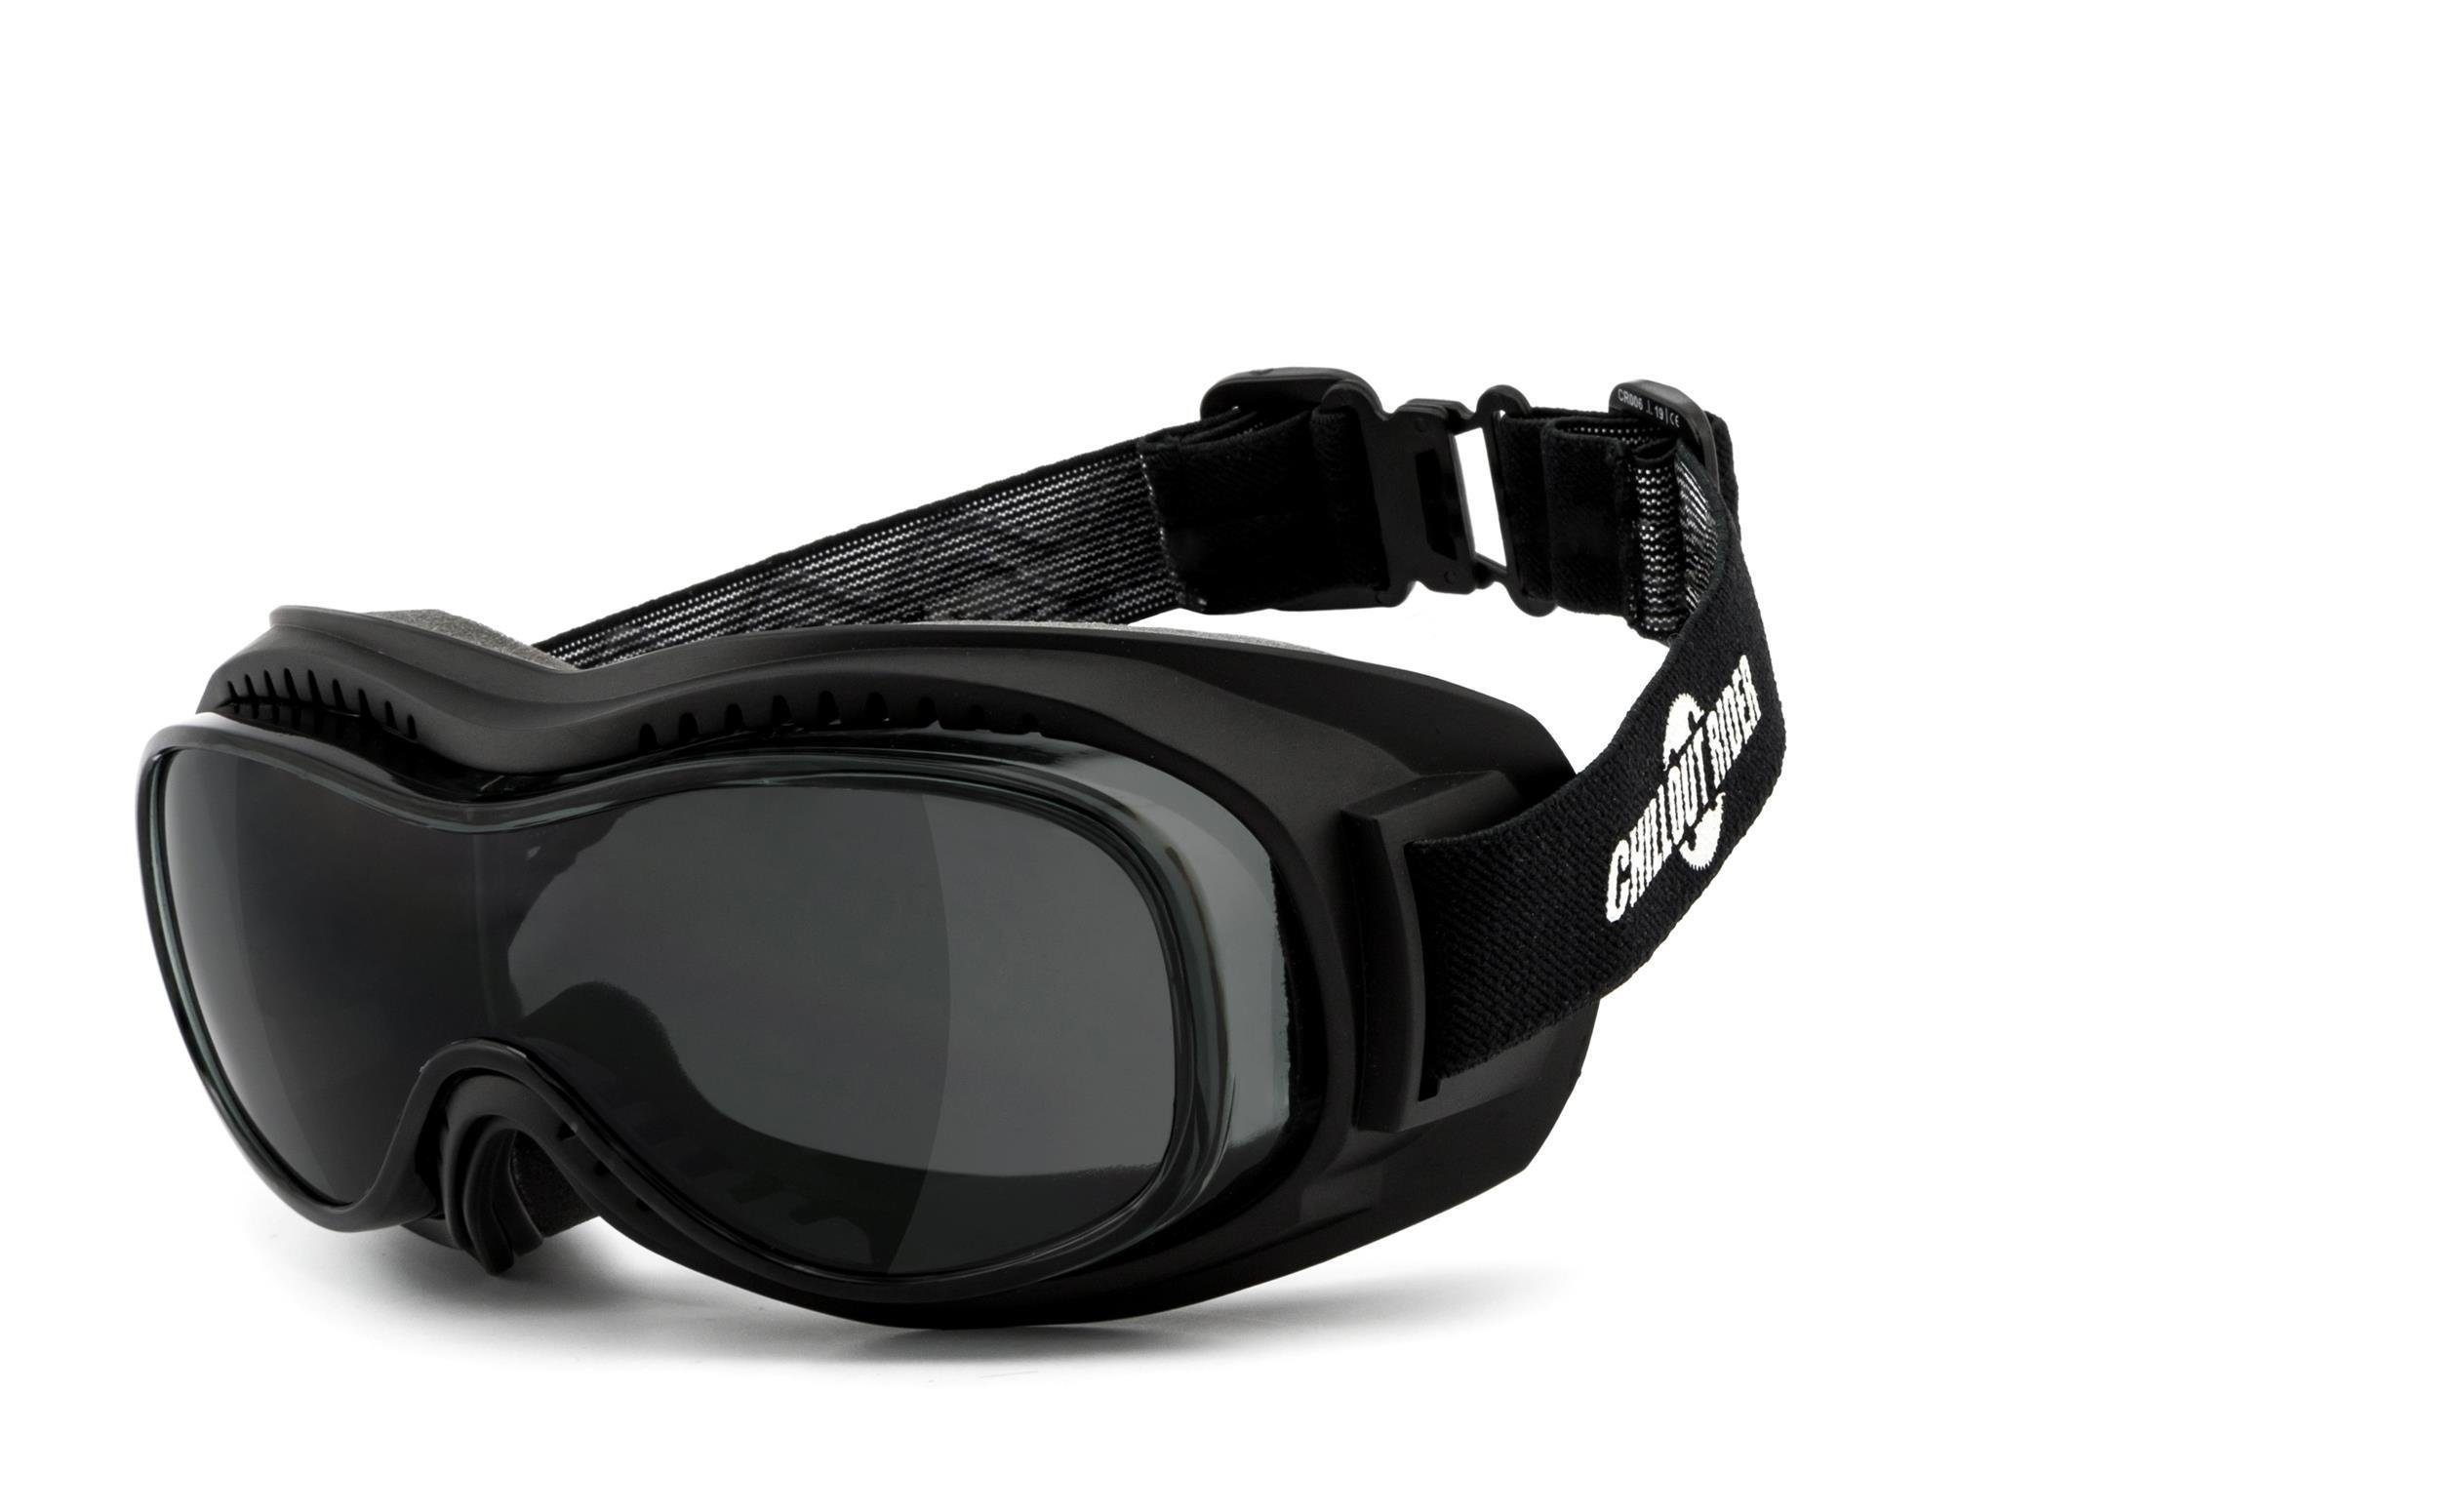 Chillout Rider Sonnenbrille ÜBERBRILLE, für CR006 geeignet Brillenträger